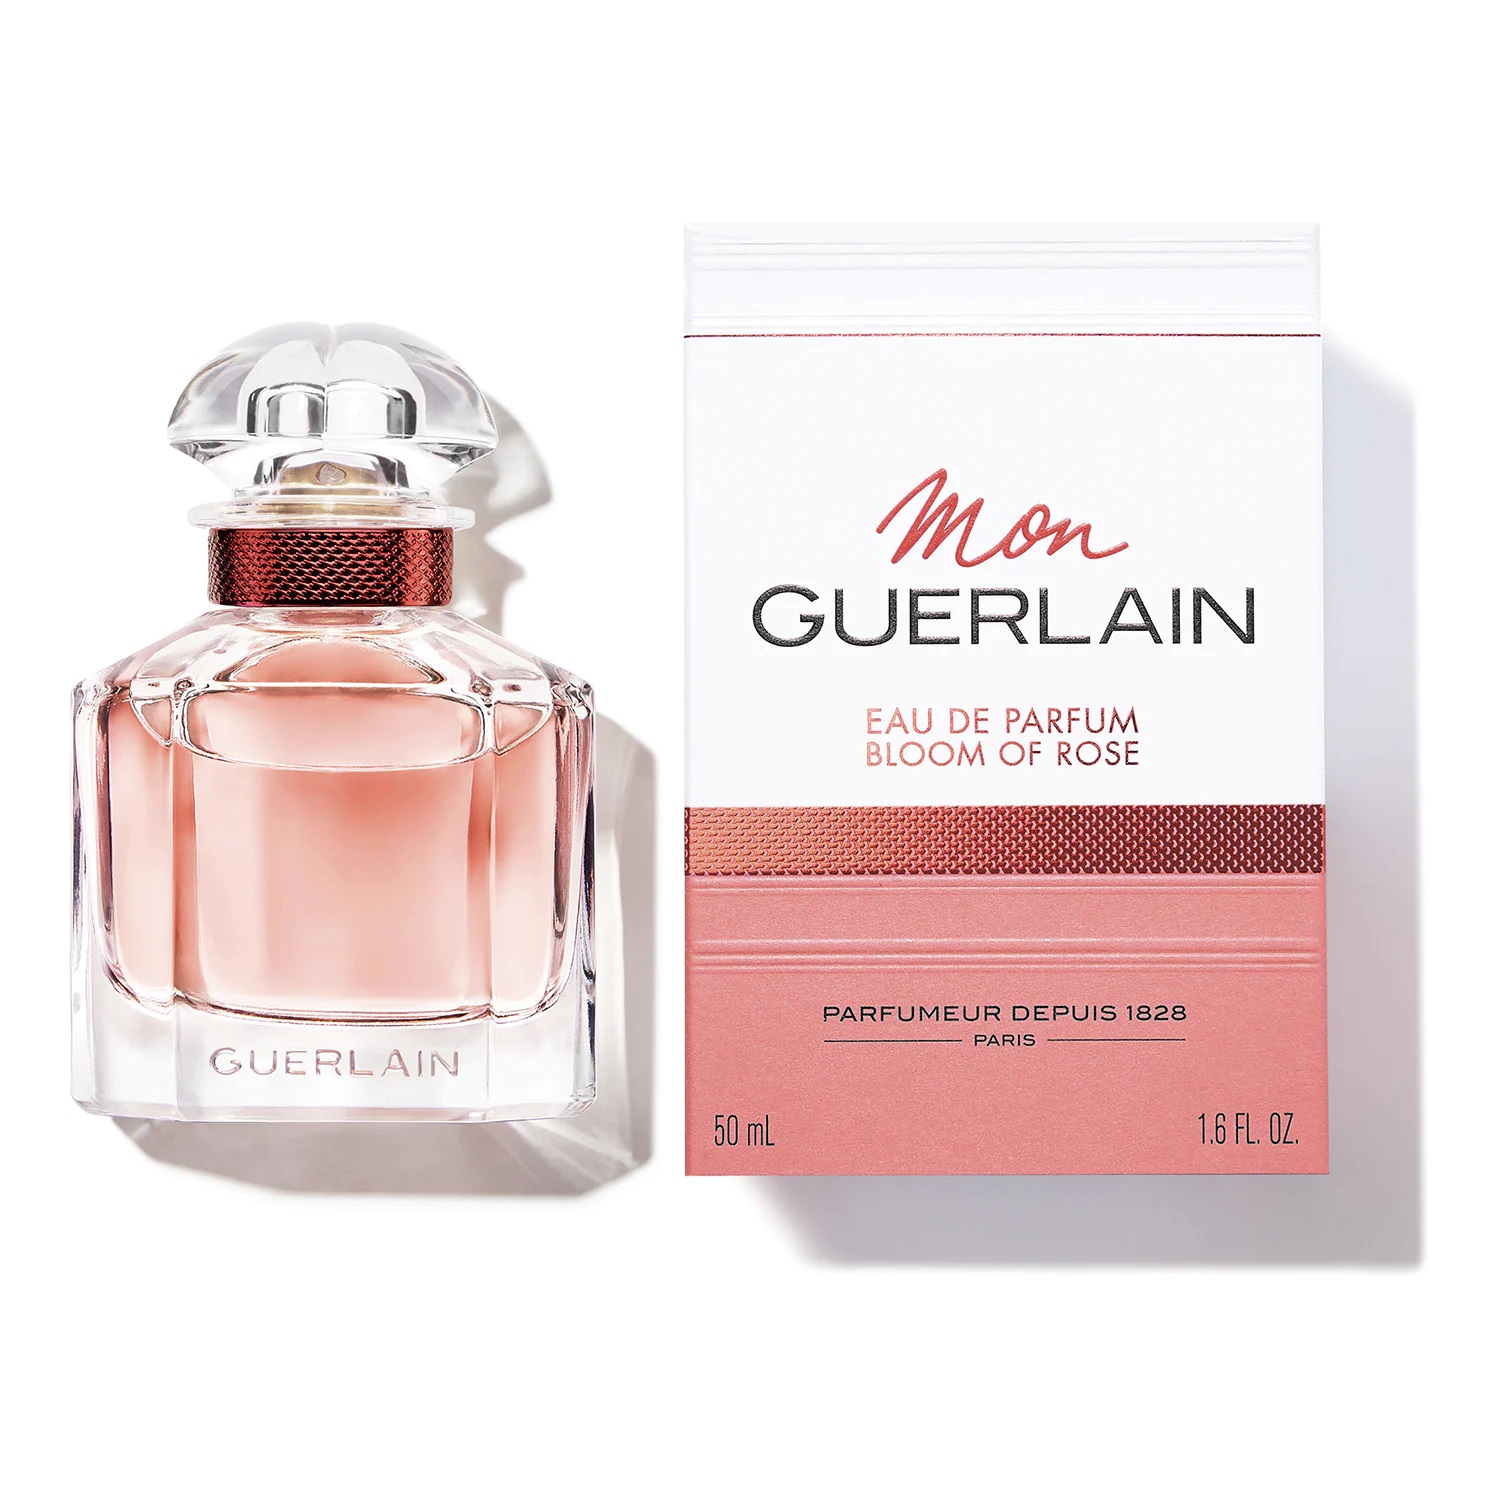 Guerlain Mon Guerlain Bloom her of de - Scentists eau parfum Rose